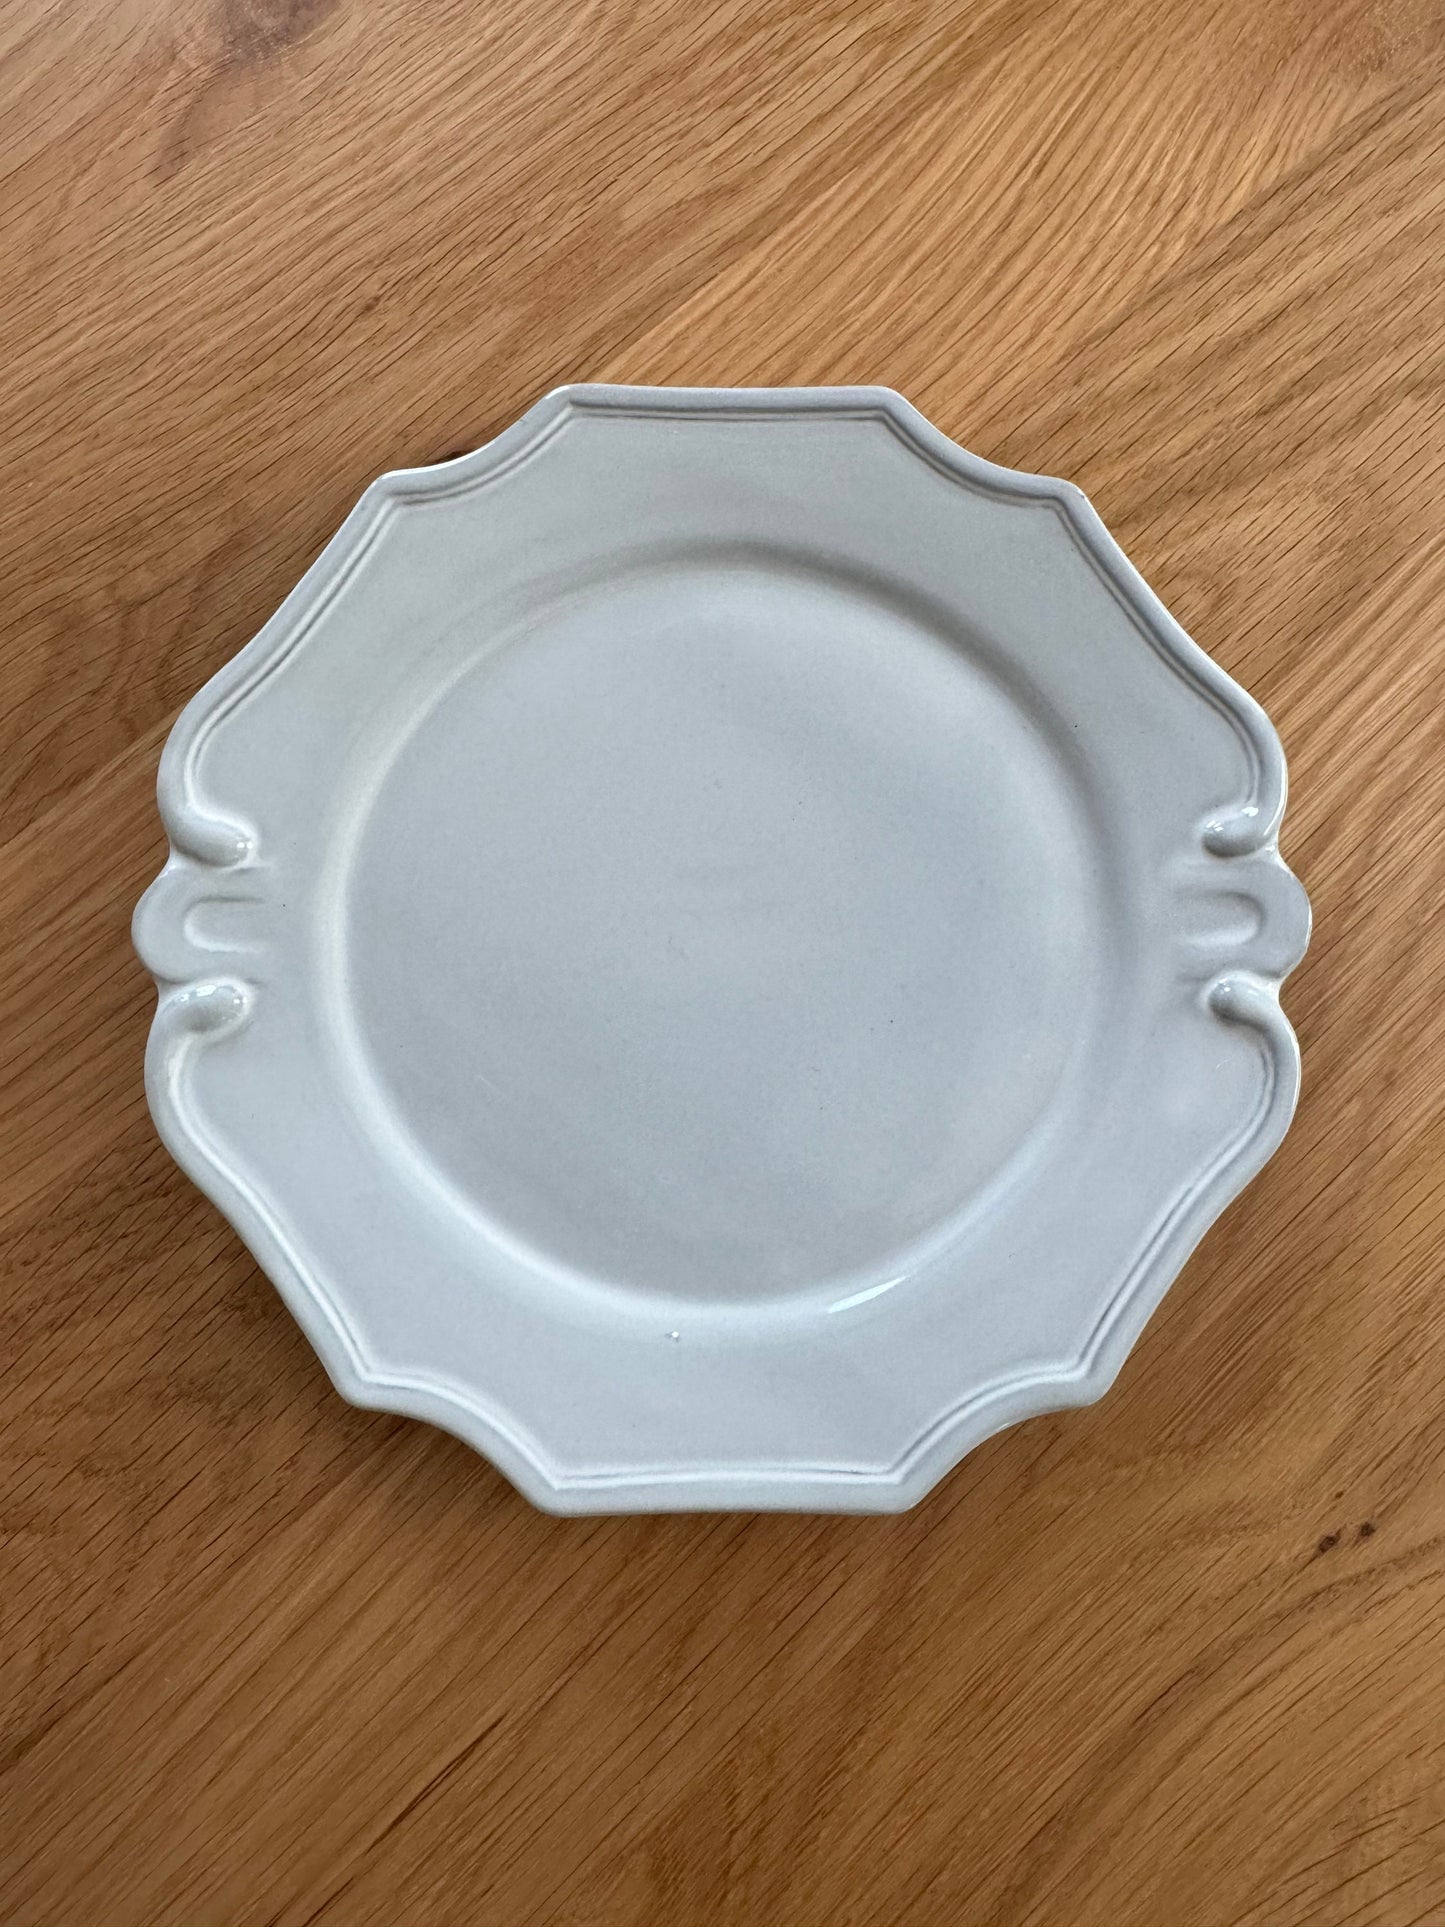 Minoware Plate European Antique Style - Marushin Pottery丸新製陶所